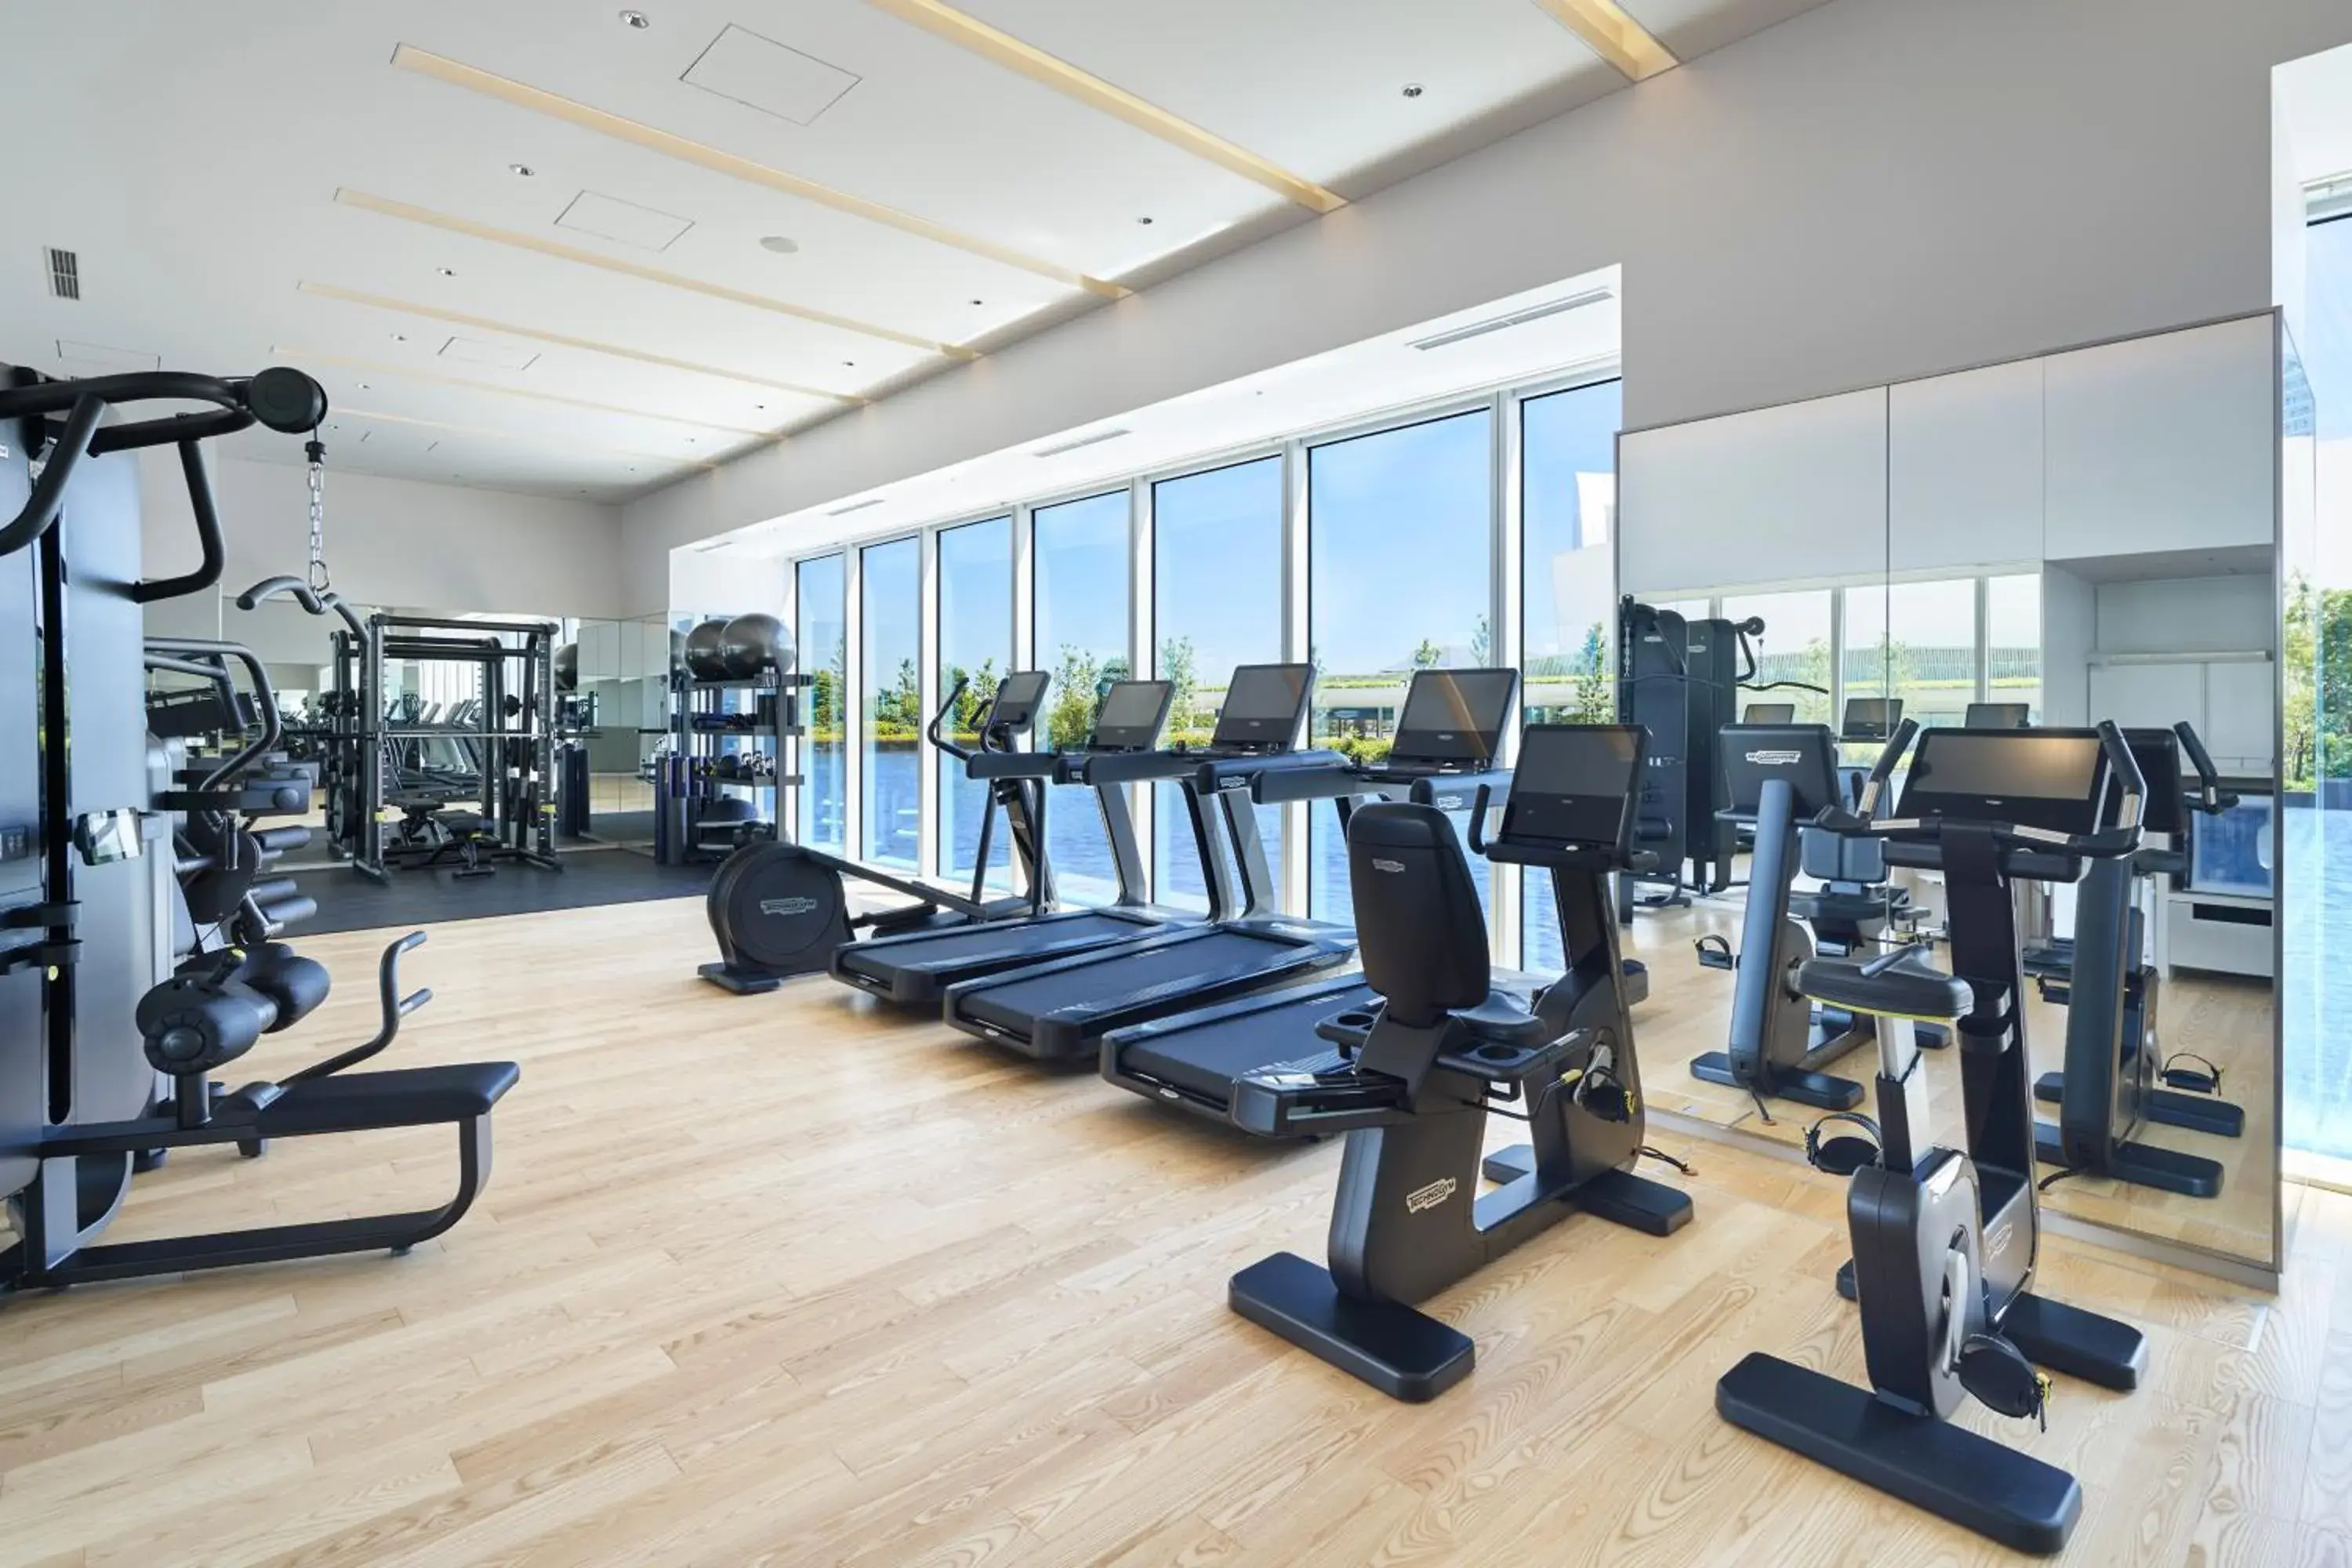 Spa and wellness centre/facilities, Fitness Center/Facilities in The Kahala Hotel & Resort Yokohama